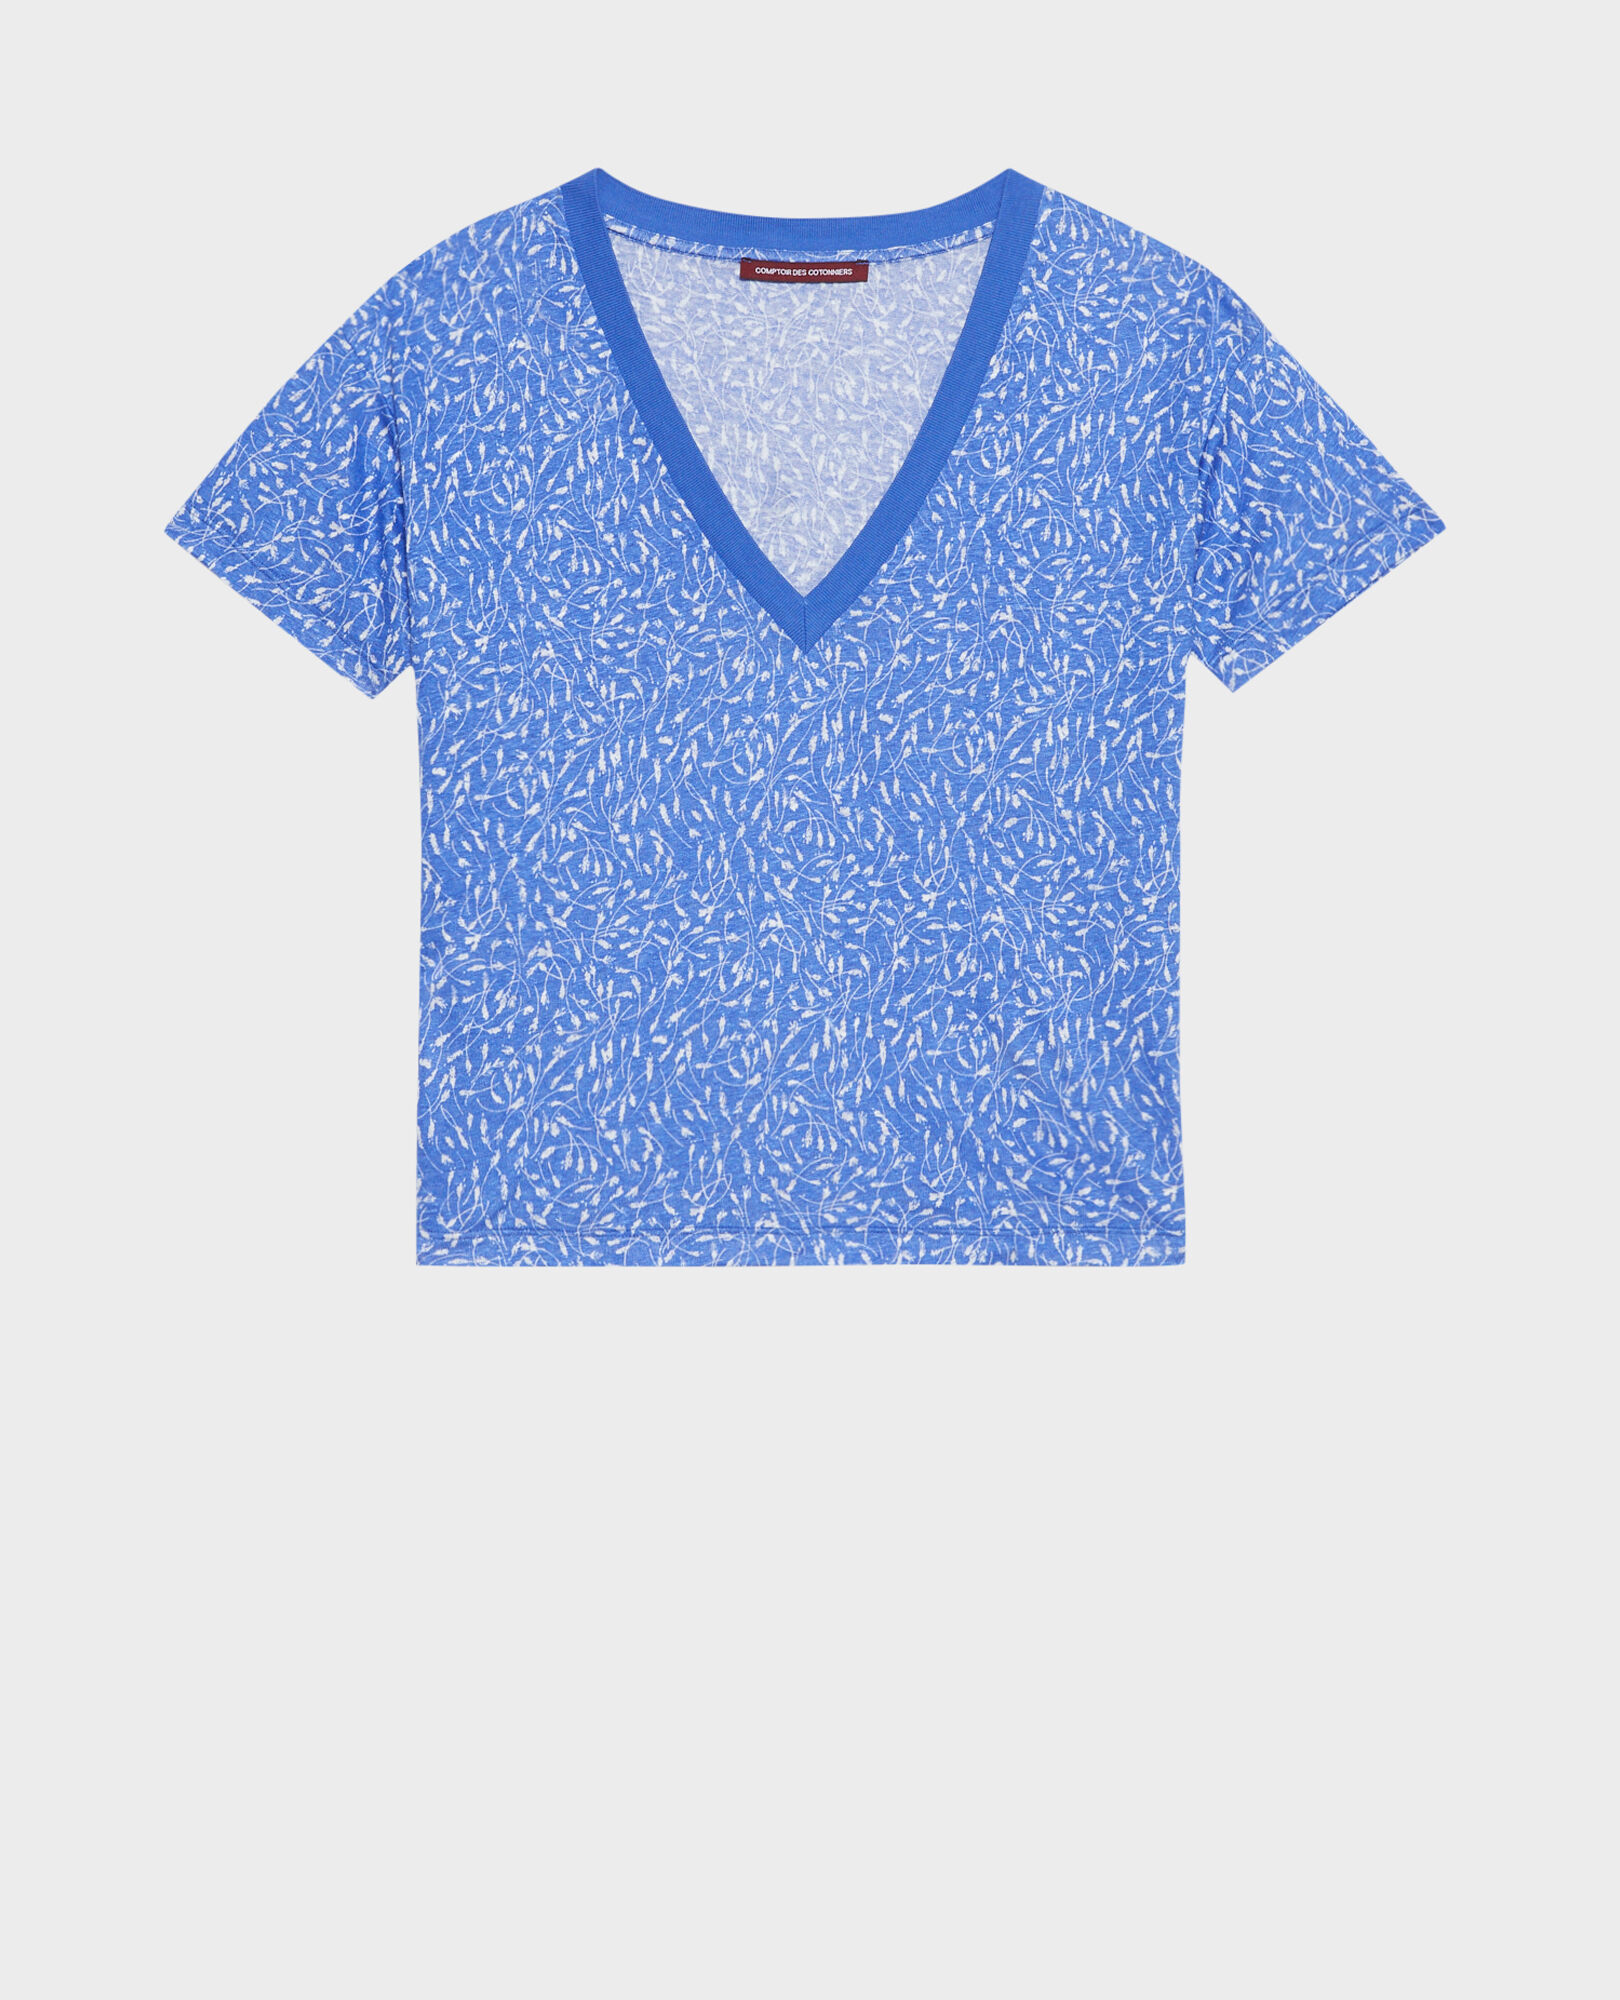 SARAH - T-Shirt mit V-Ausschnitt aus Leinen 91 print blue 2ste338f05